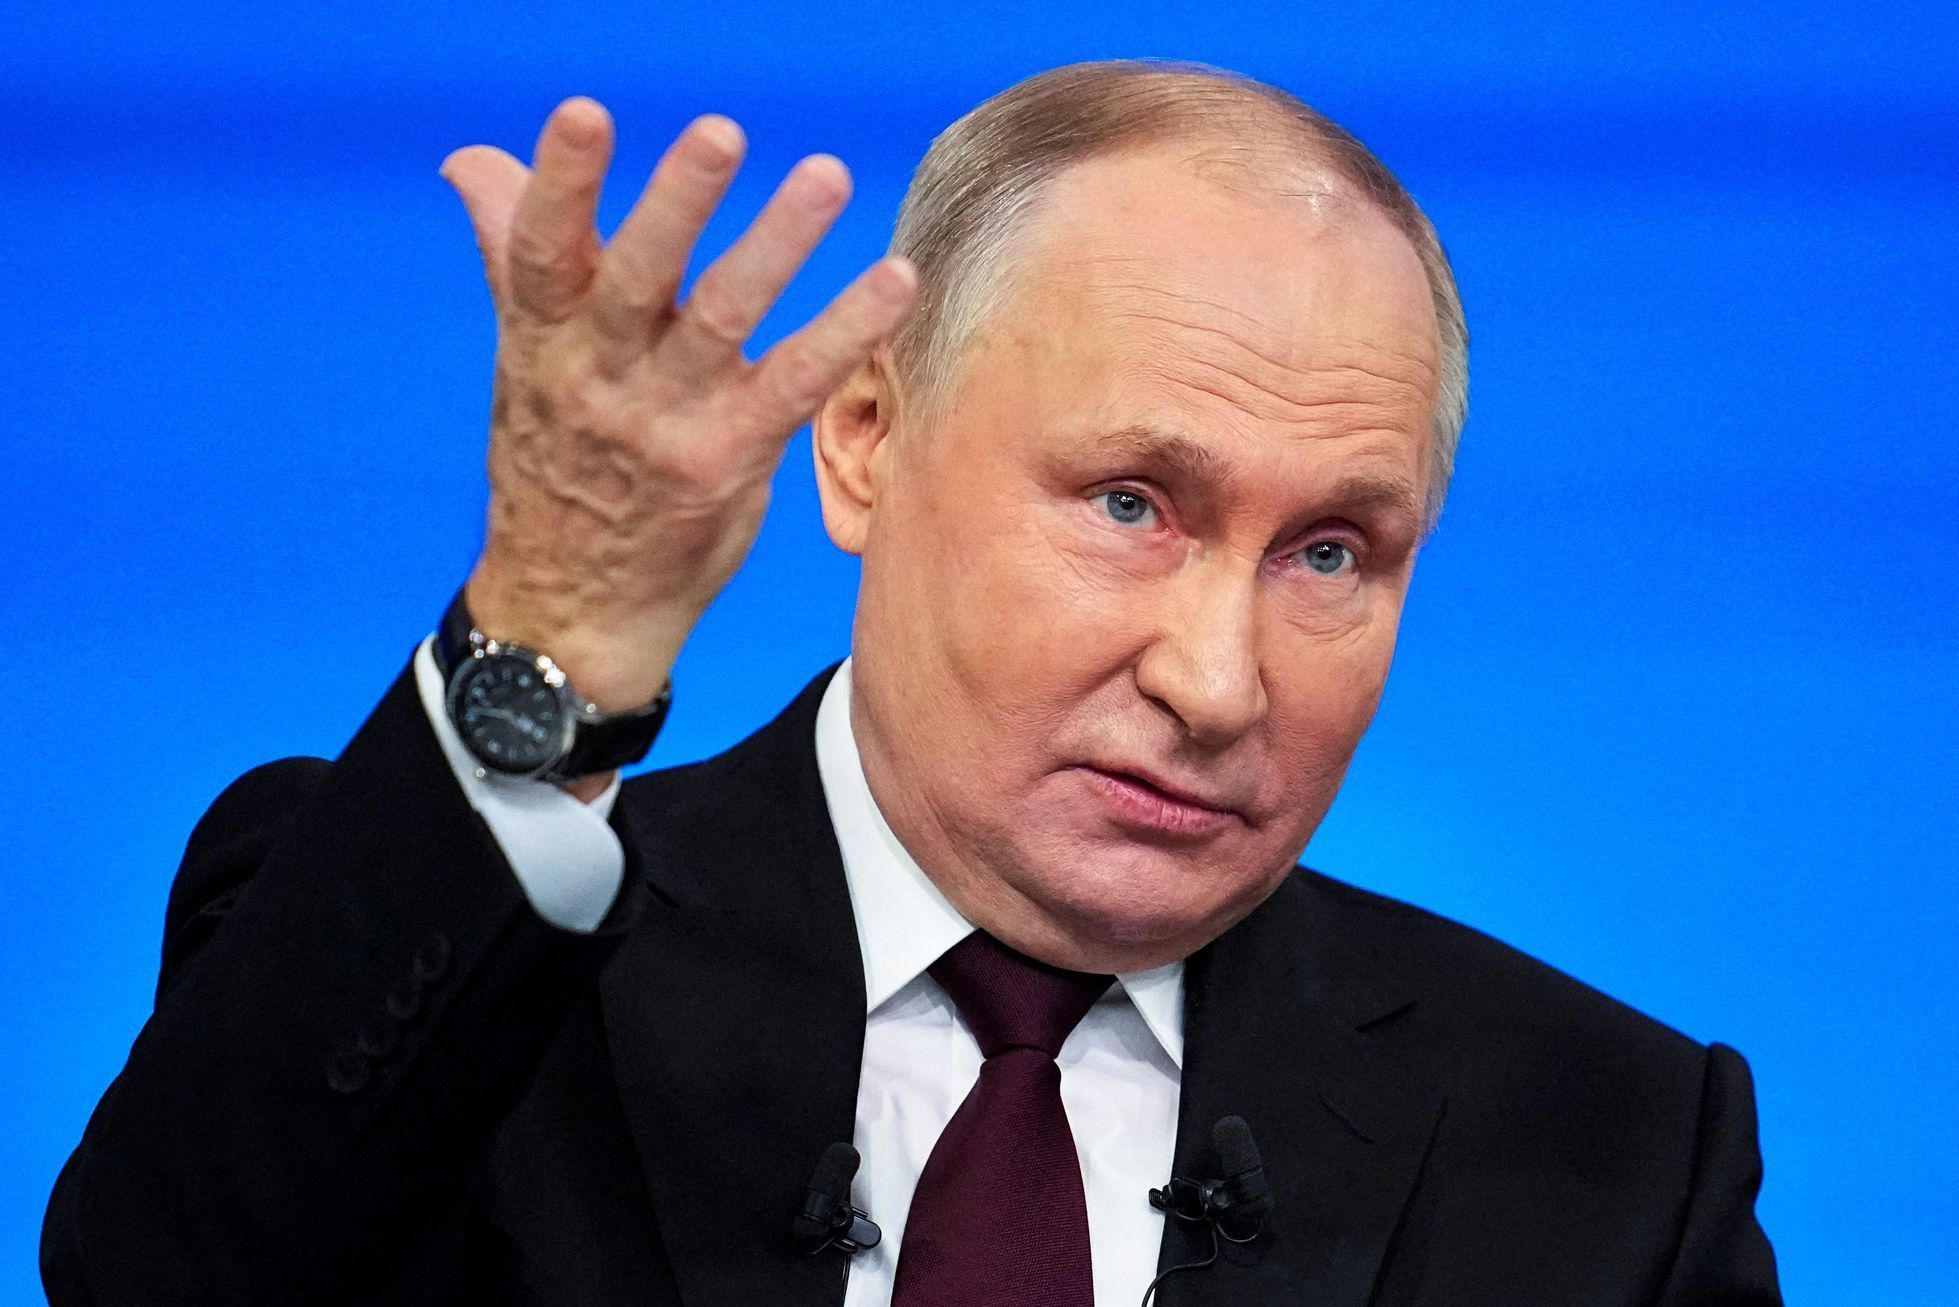 Vladimir Putin v televizi "odpovídá na dotazy občanů."